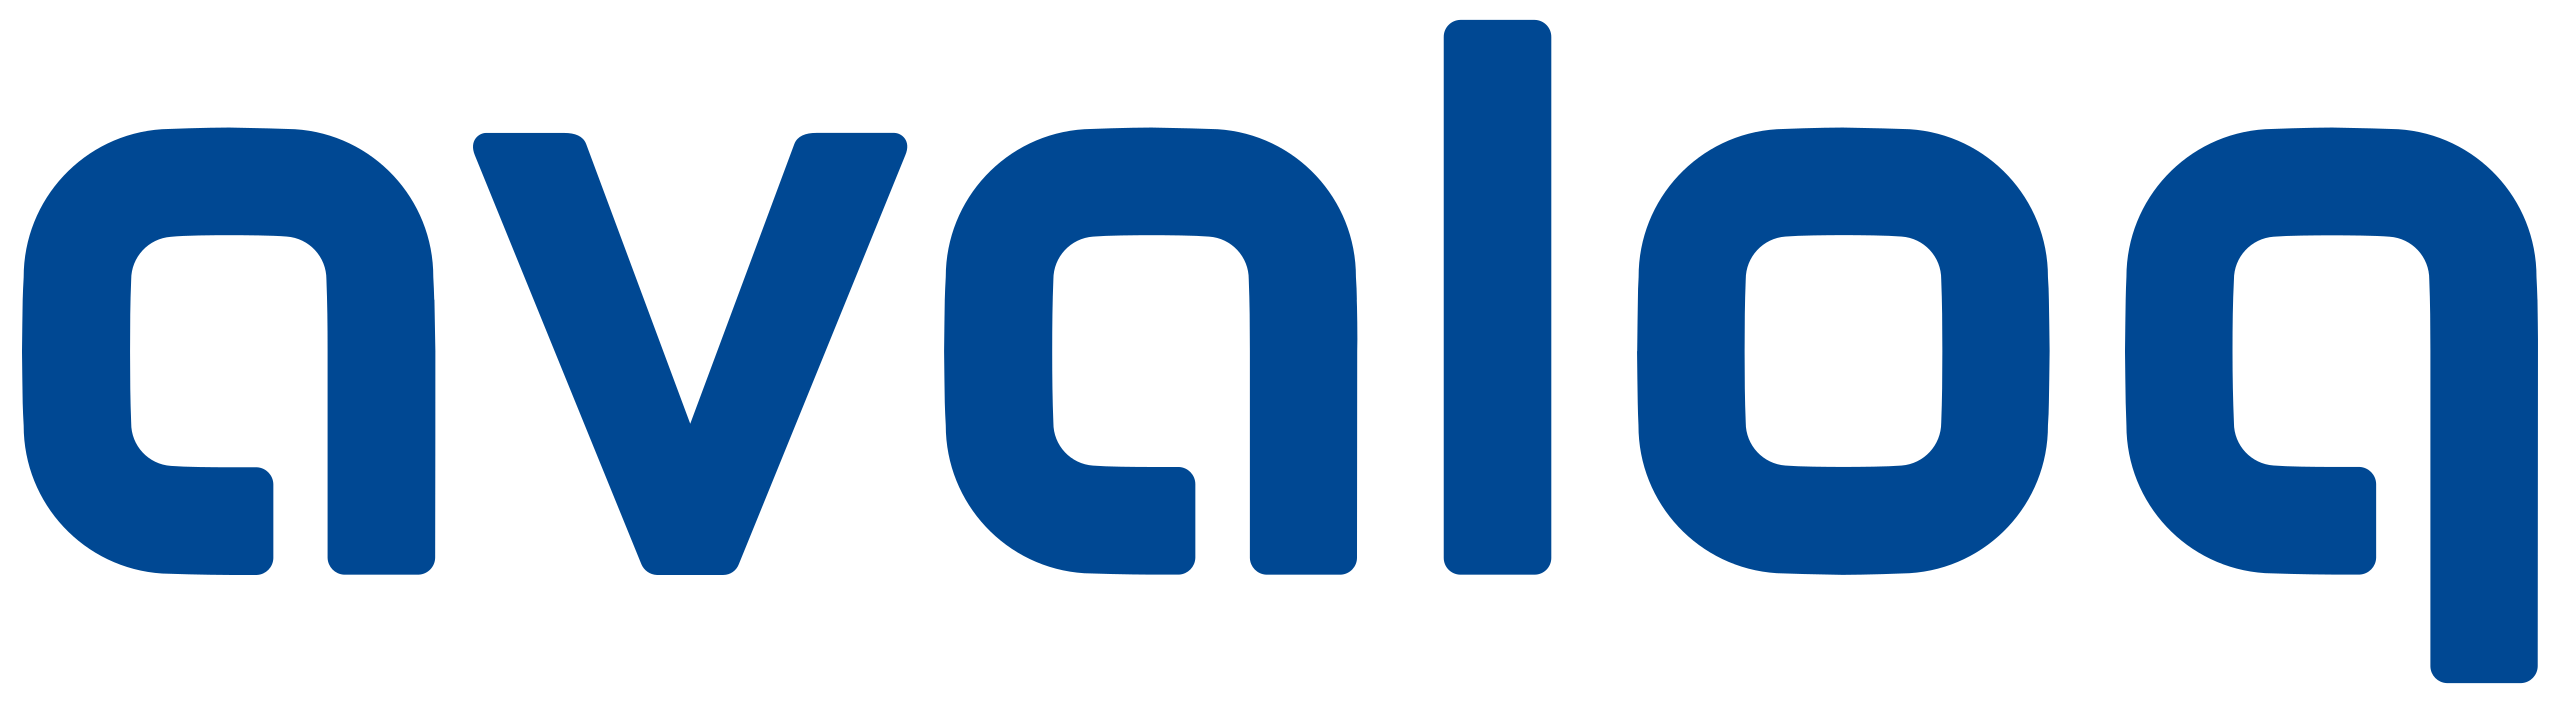 Avaloq 徽标